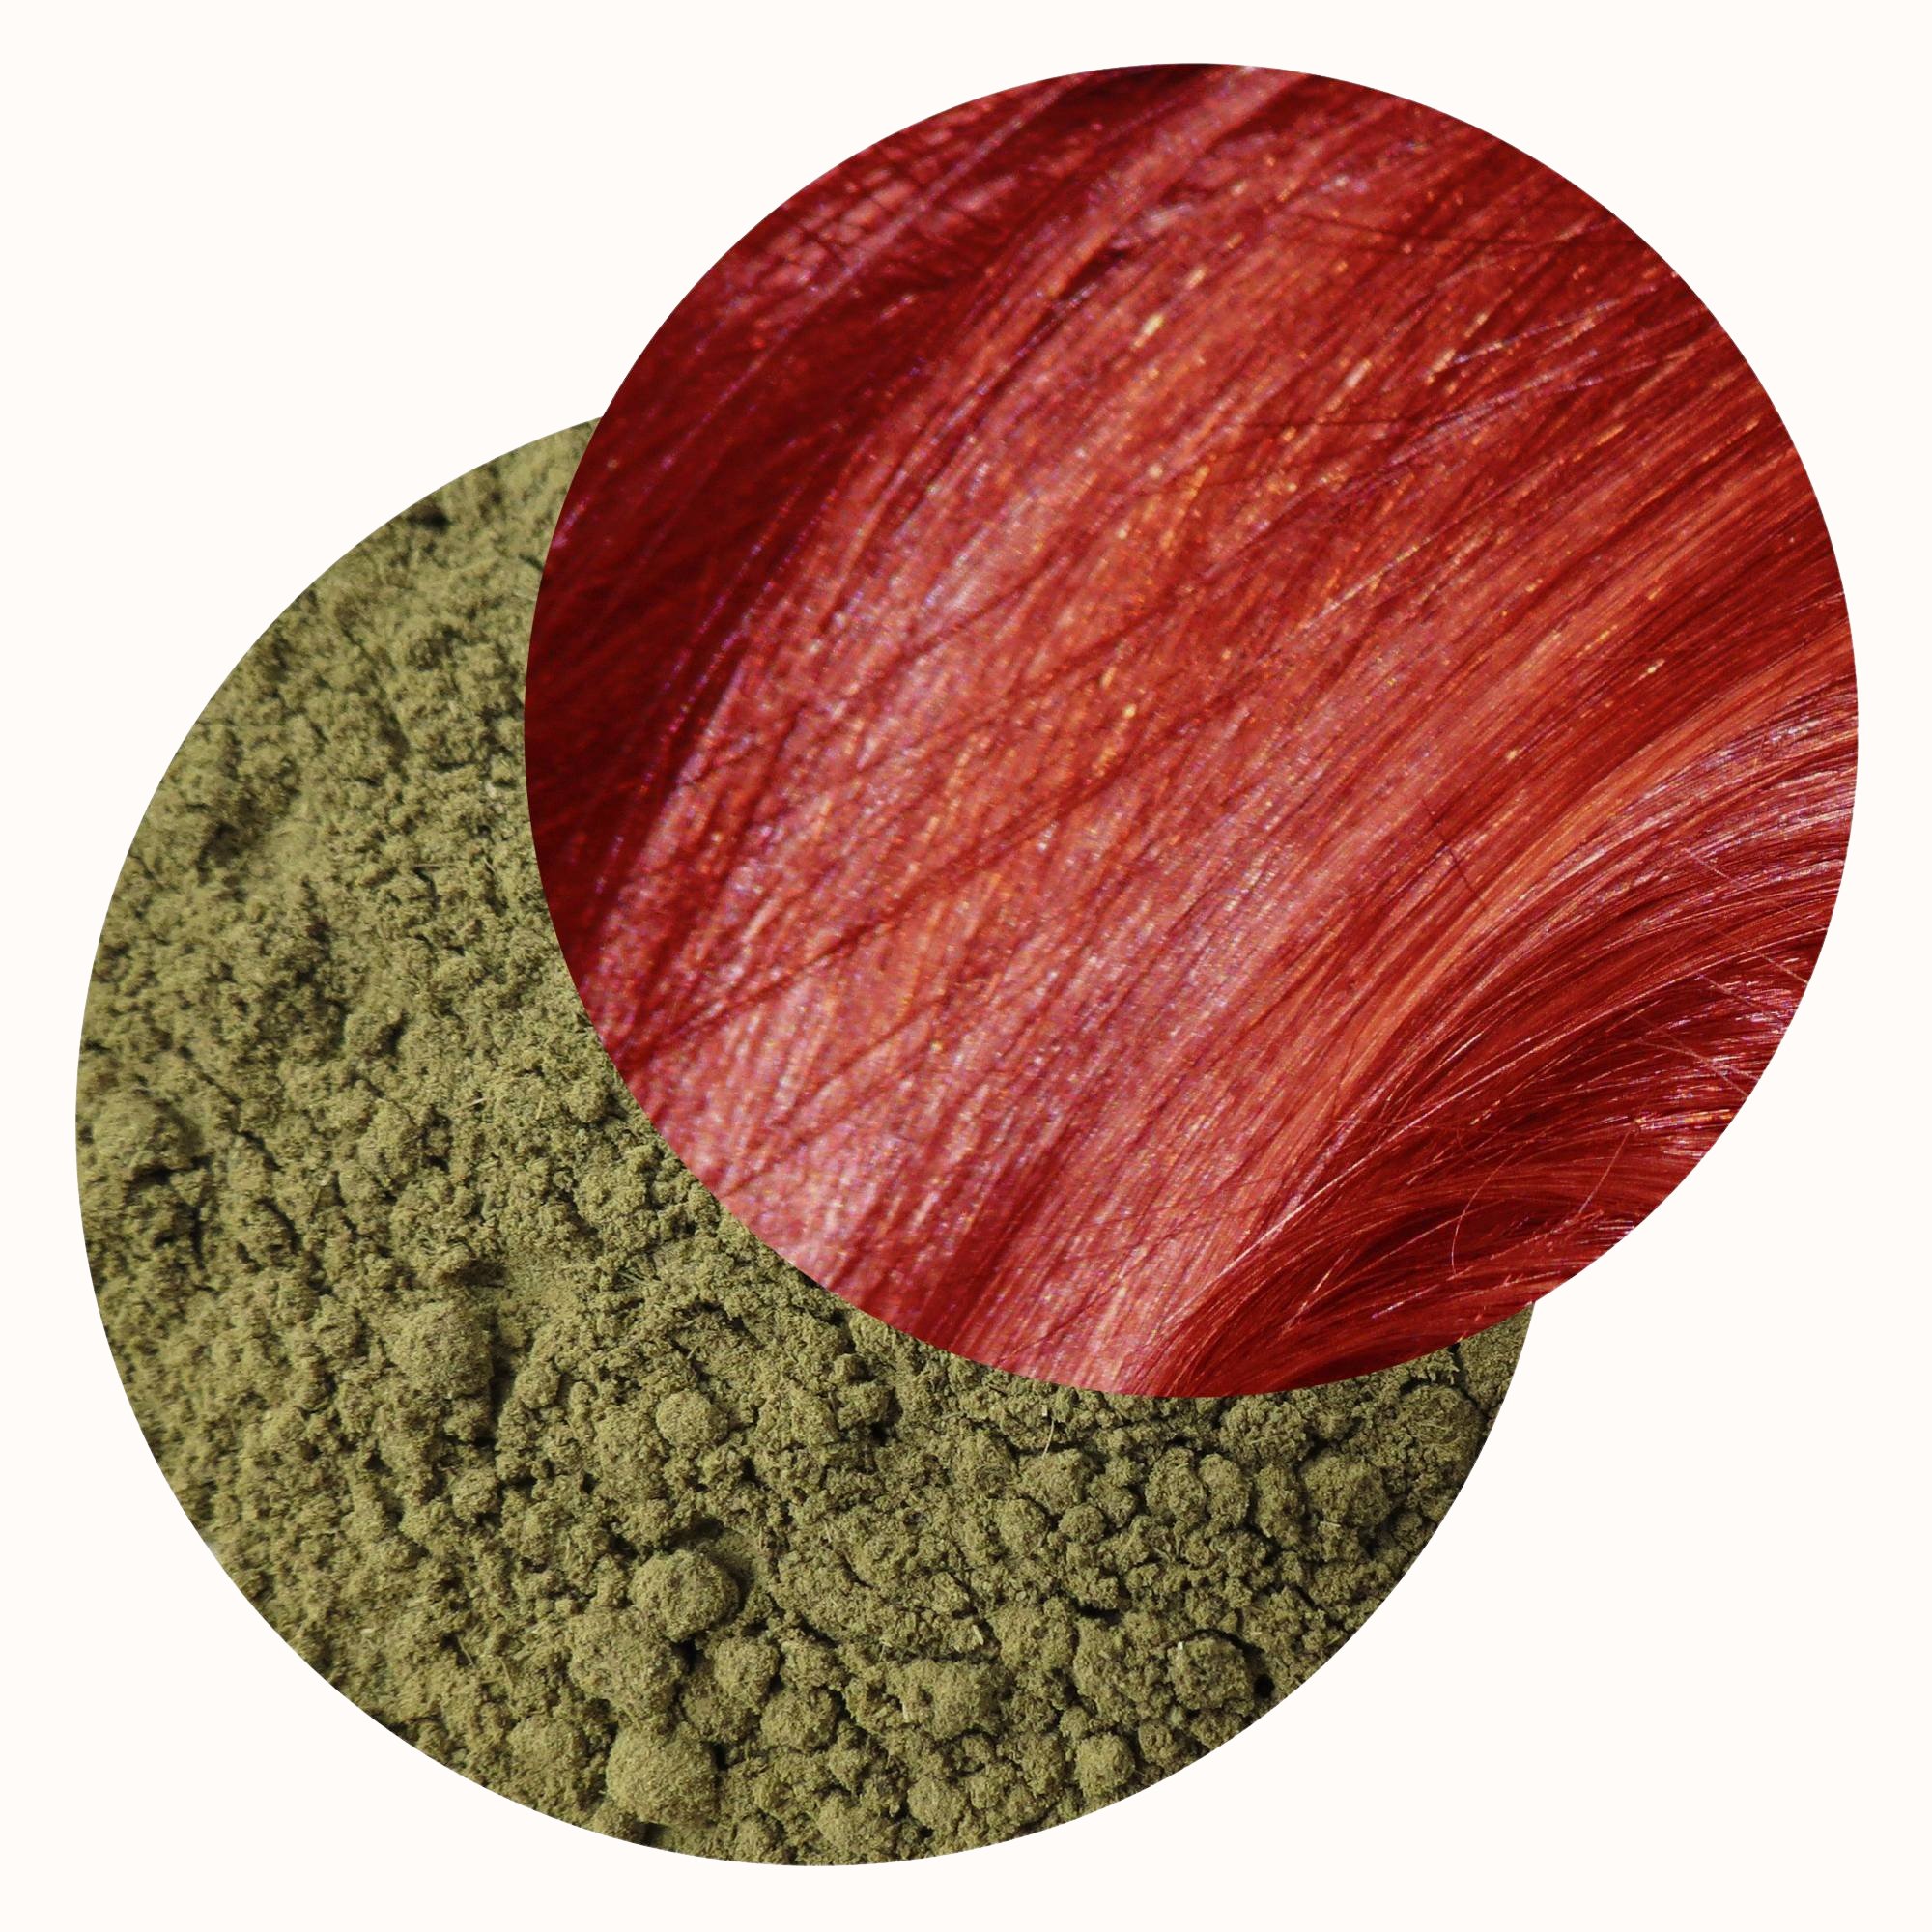 Henné rouge du Yémen - Colorant capillaire végétal